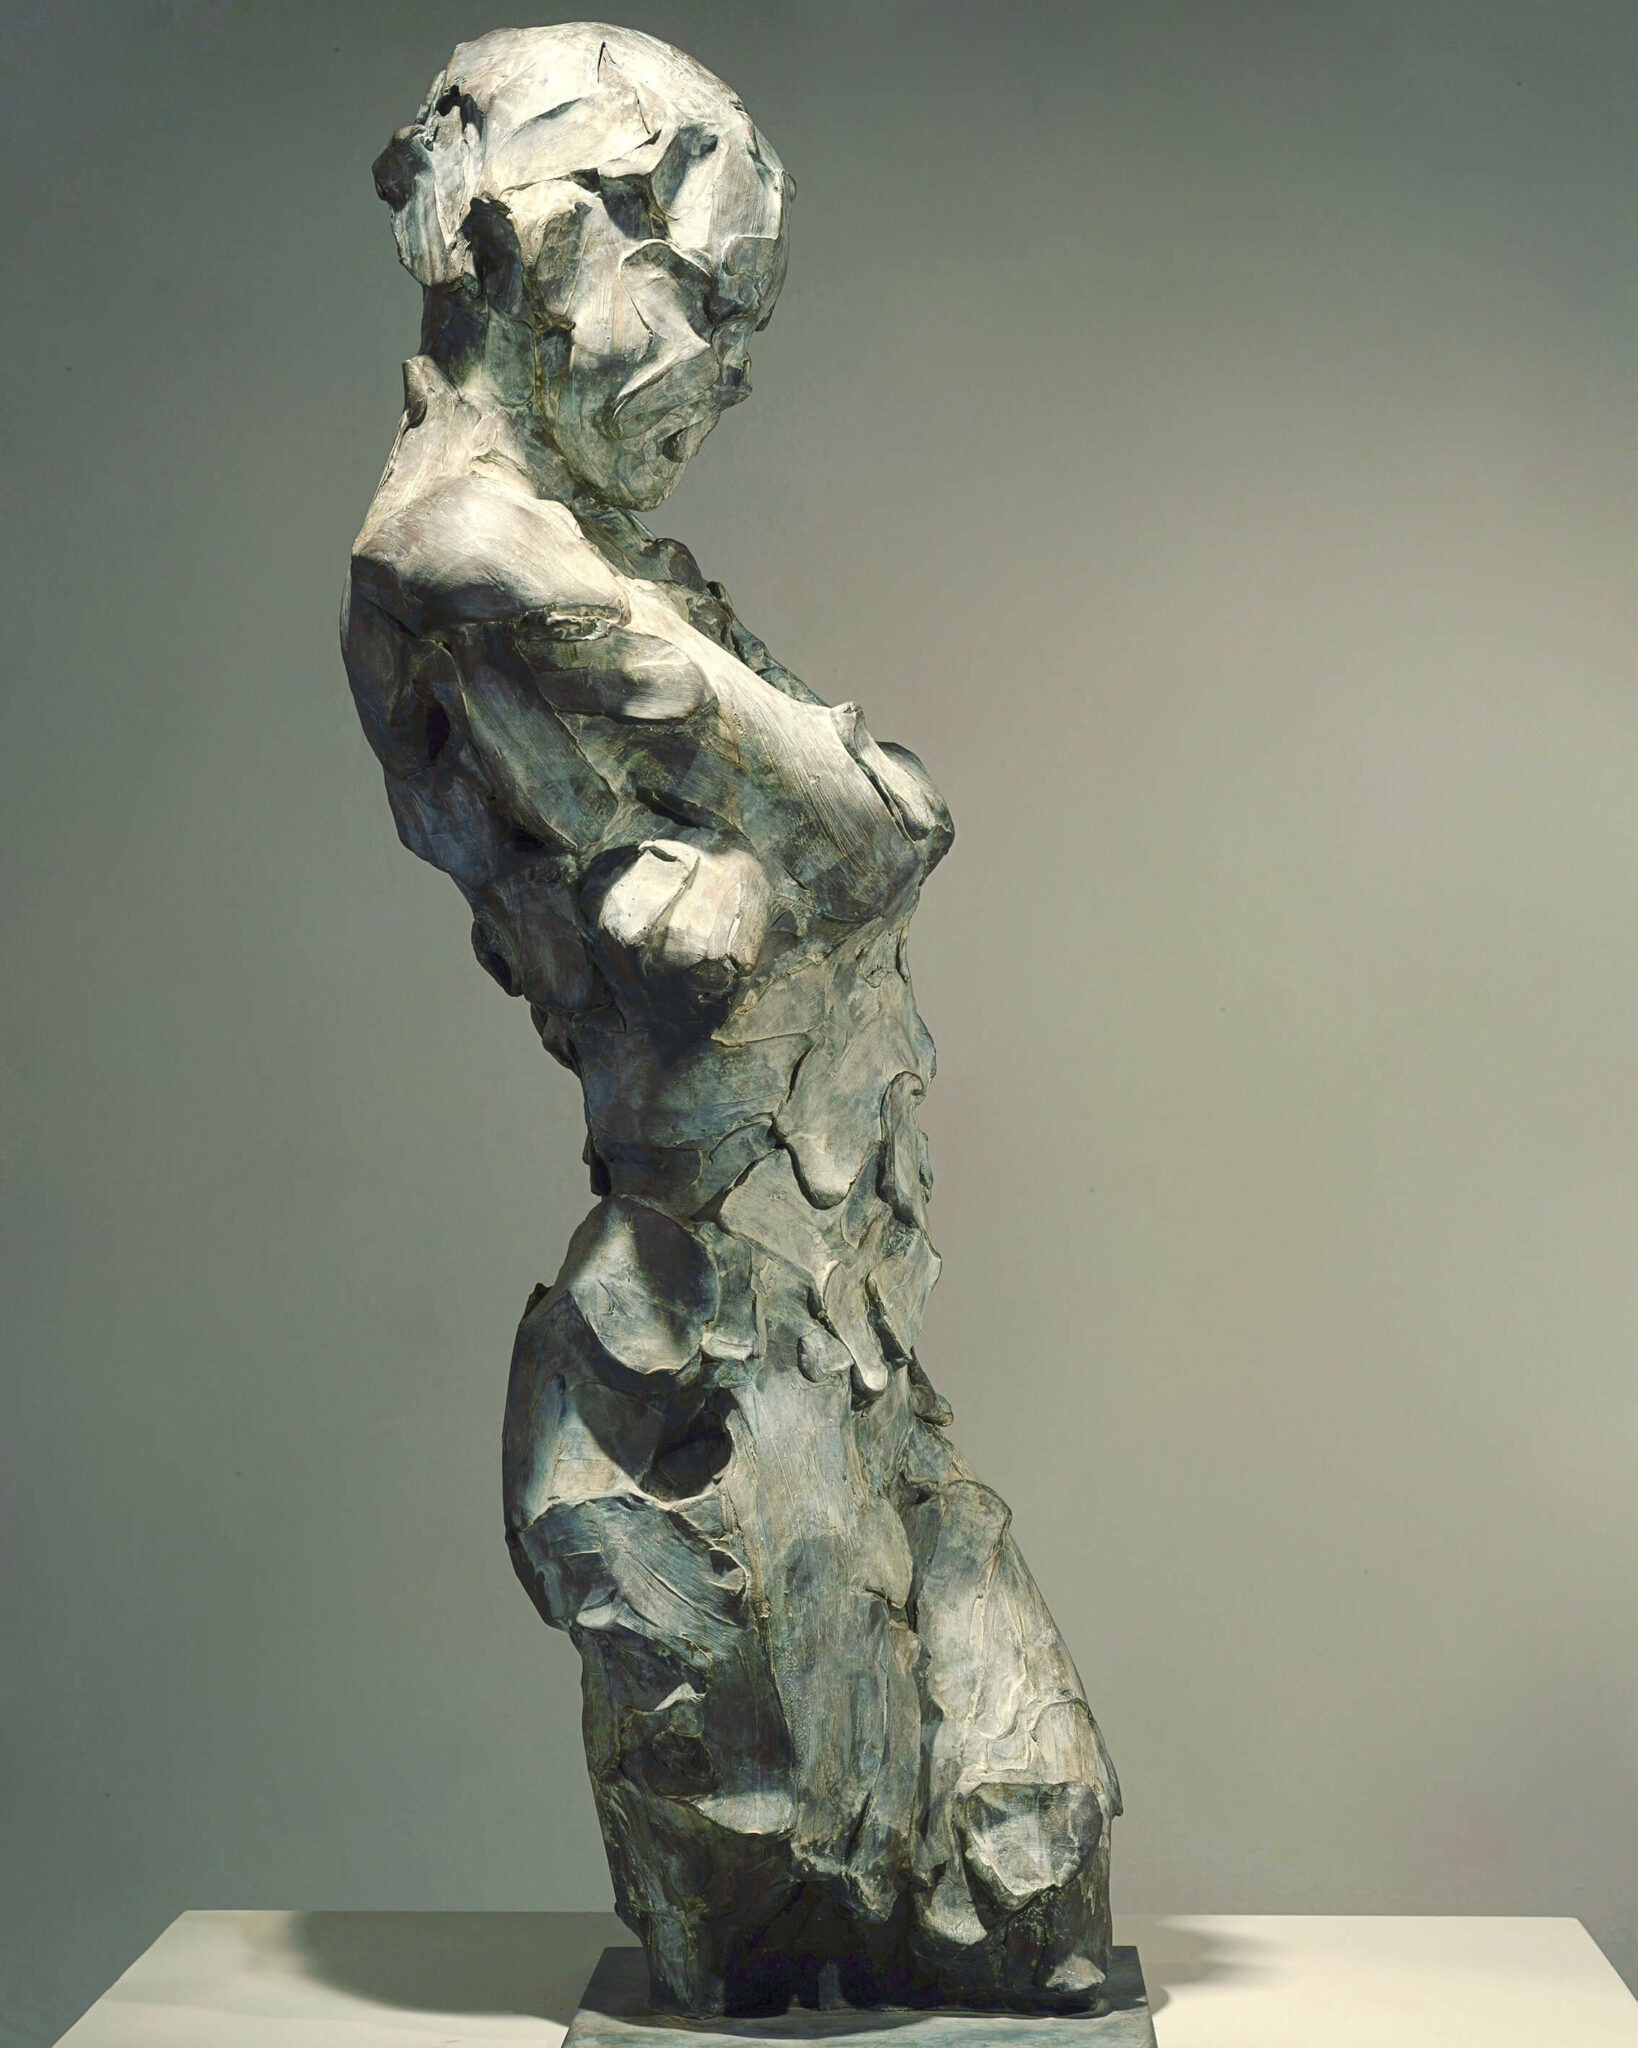 010-catherine thiry SANS TITRE bronze sculpture 105cm